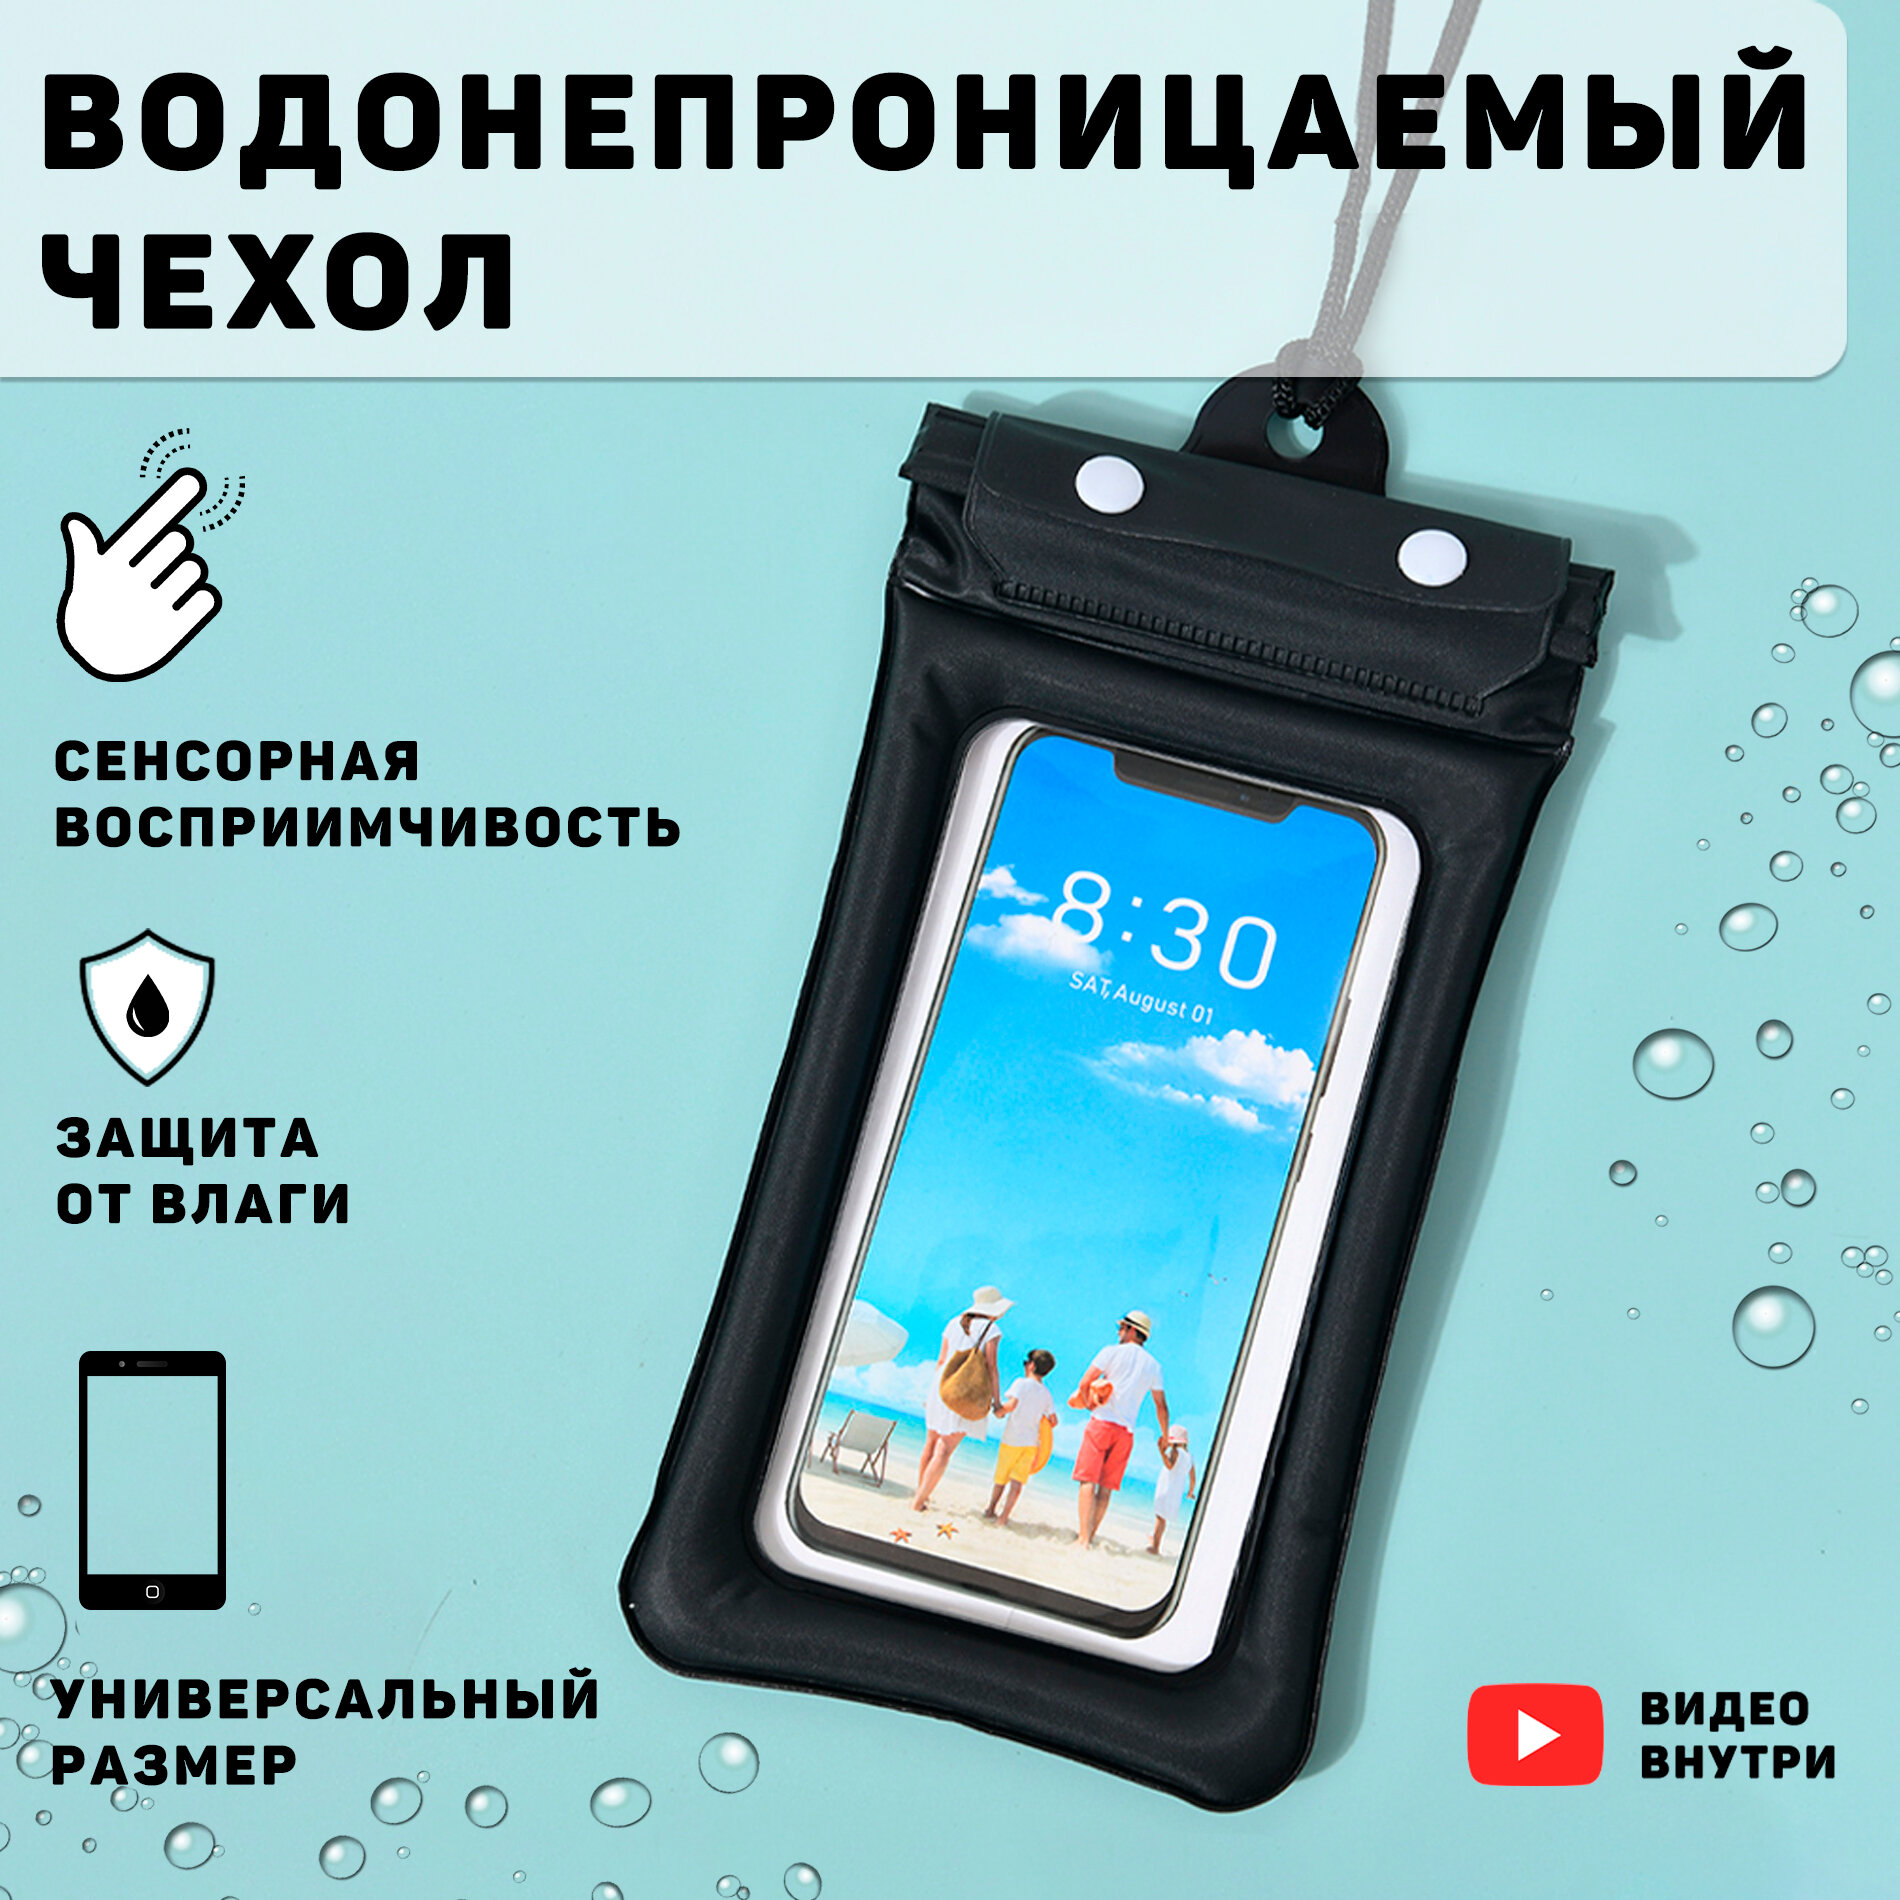 Чехол для телефона, документов, ключей водонепронецаемый ( черный), сумка. Для подводной съемки.